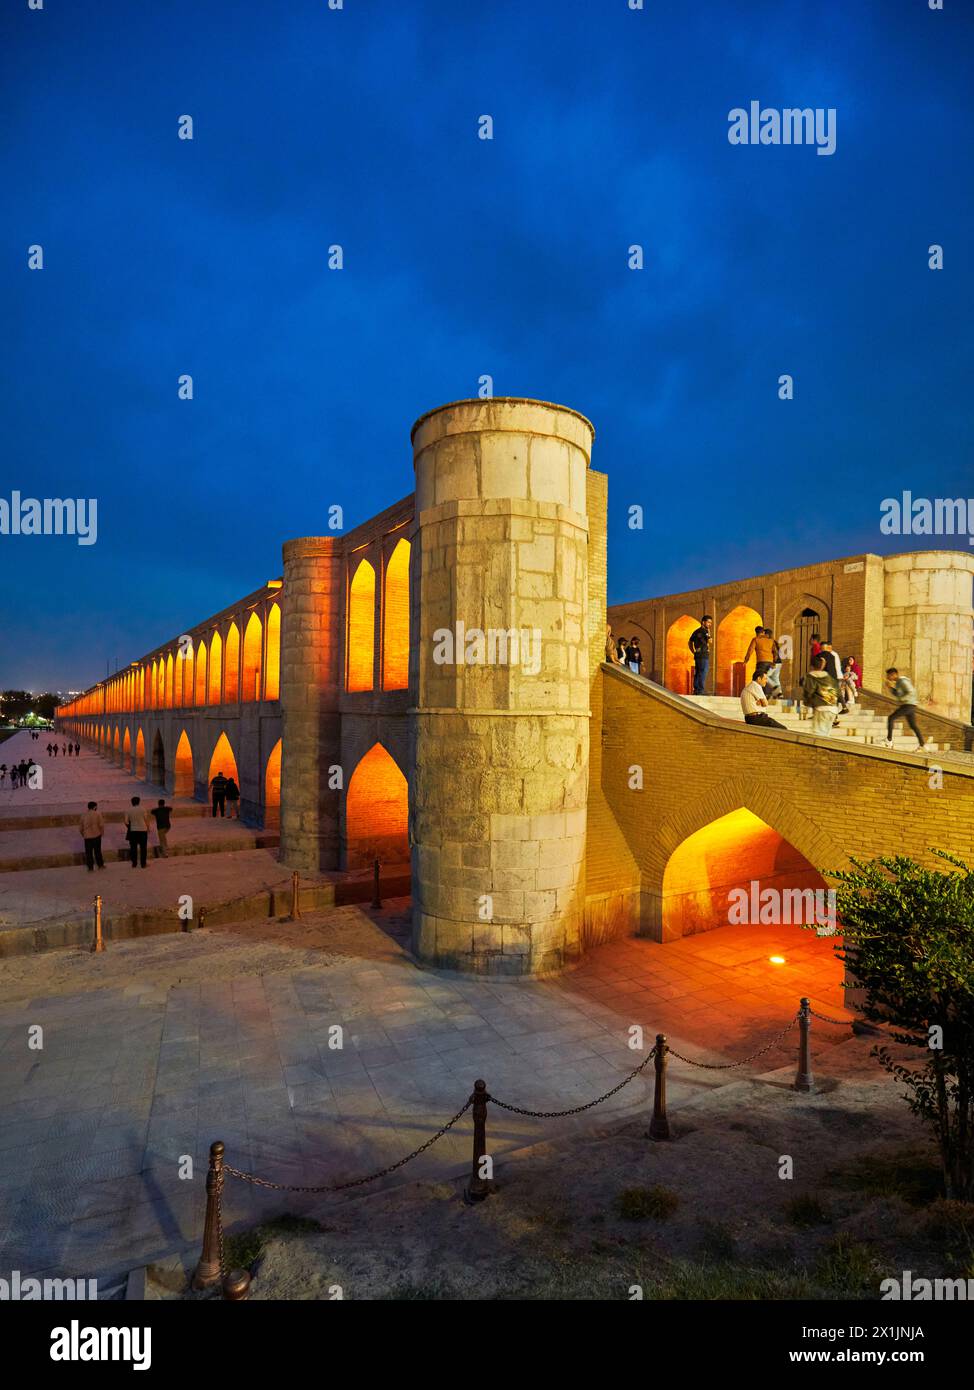 Vue du pont illuminé Allahverdi Khan, alias si-o-se-pol (17ème siècle), sur la rivière Zayanderud pendant la saison sèche avec lit de rivière sec. Ispahan, Iran. Banque D'Images